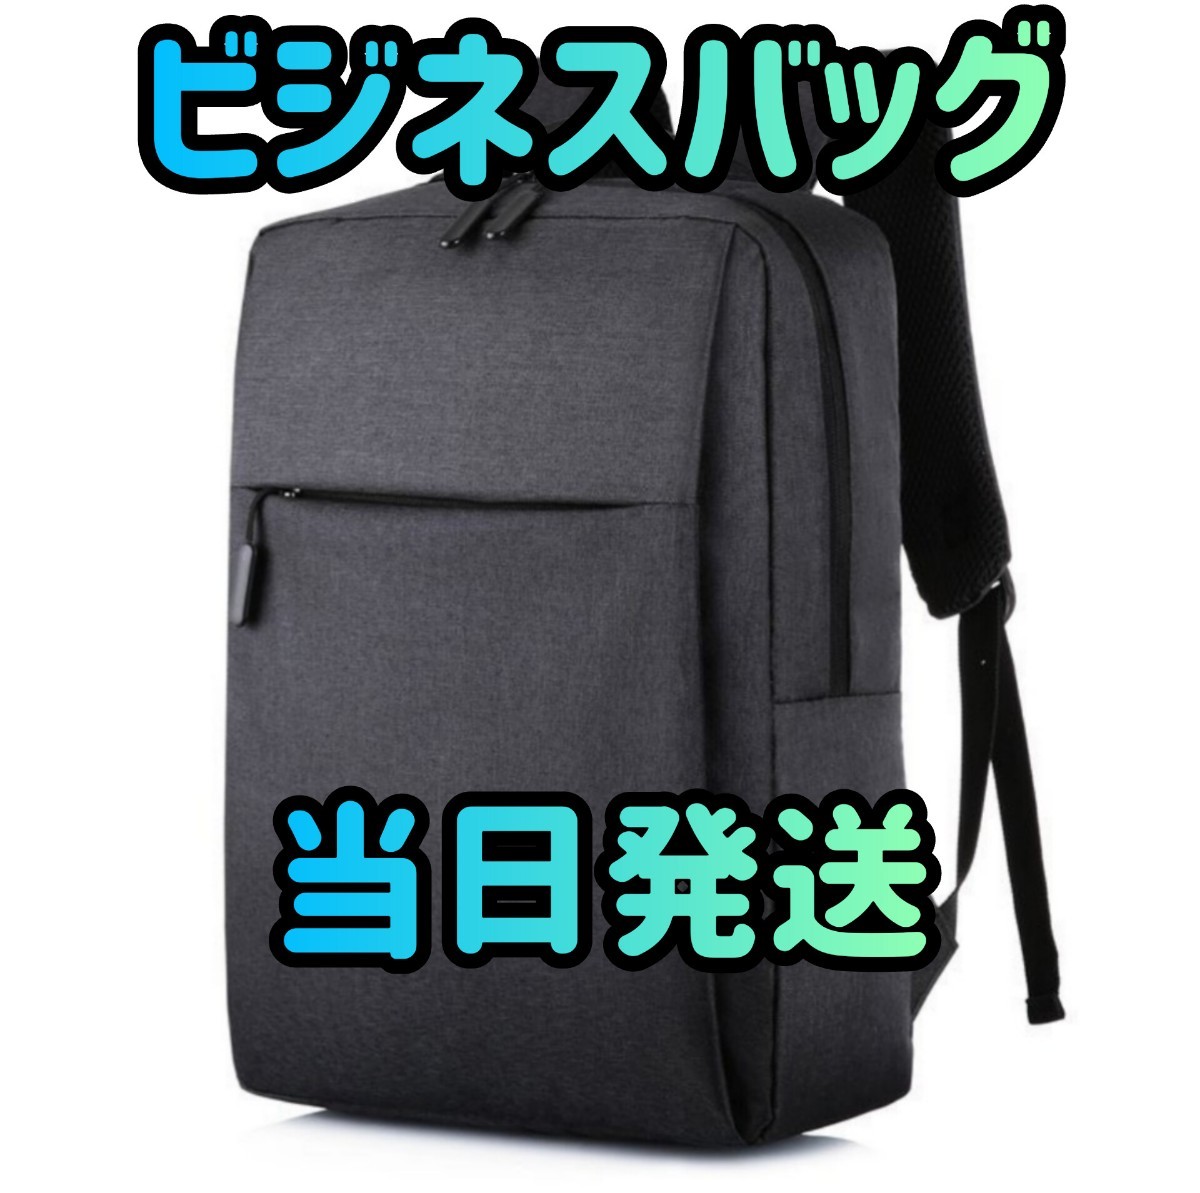 ビジネスリュック ブラック バックパック リュックサック リュック ビジネスバッグ  大容量 バッグ カバン 旅行 鞄  男女兼用の画像1